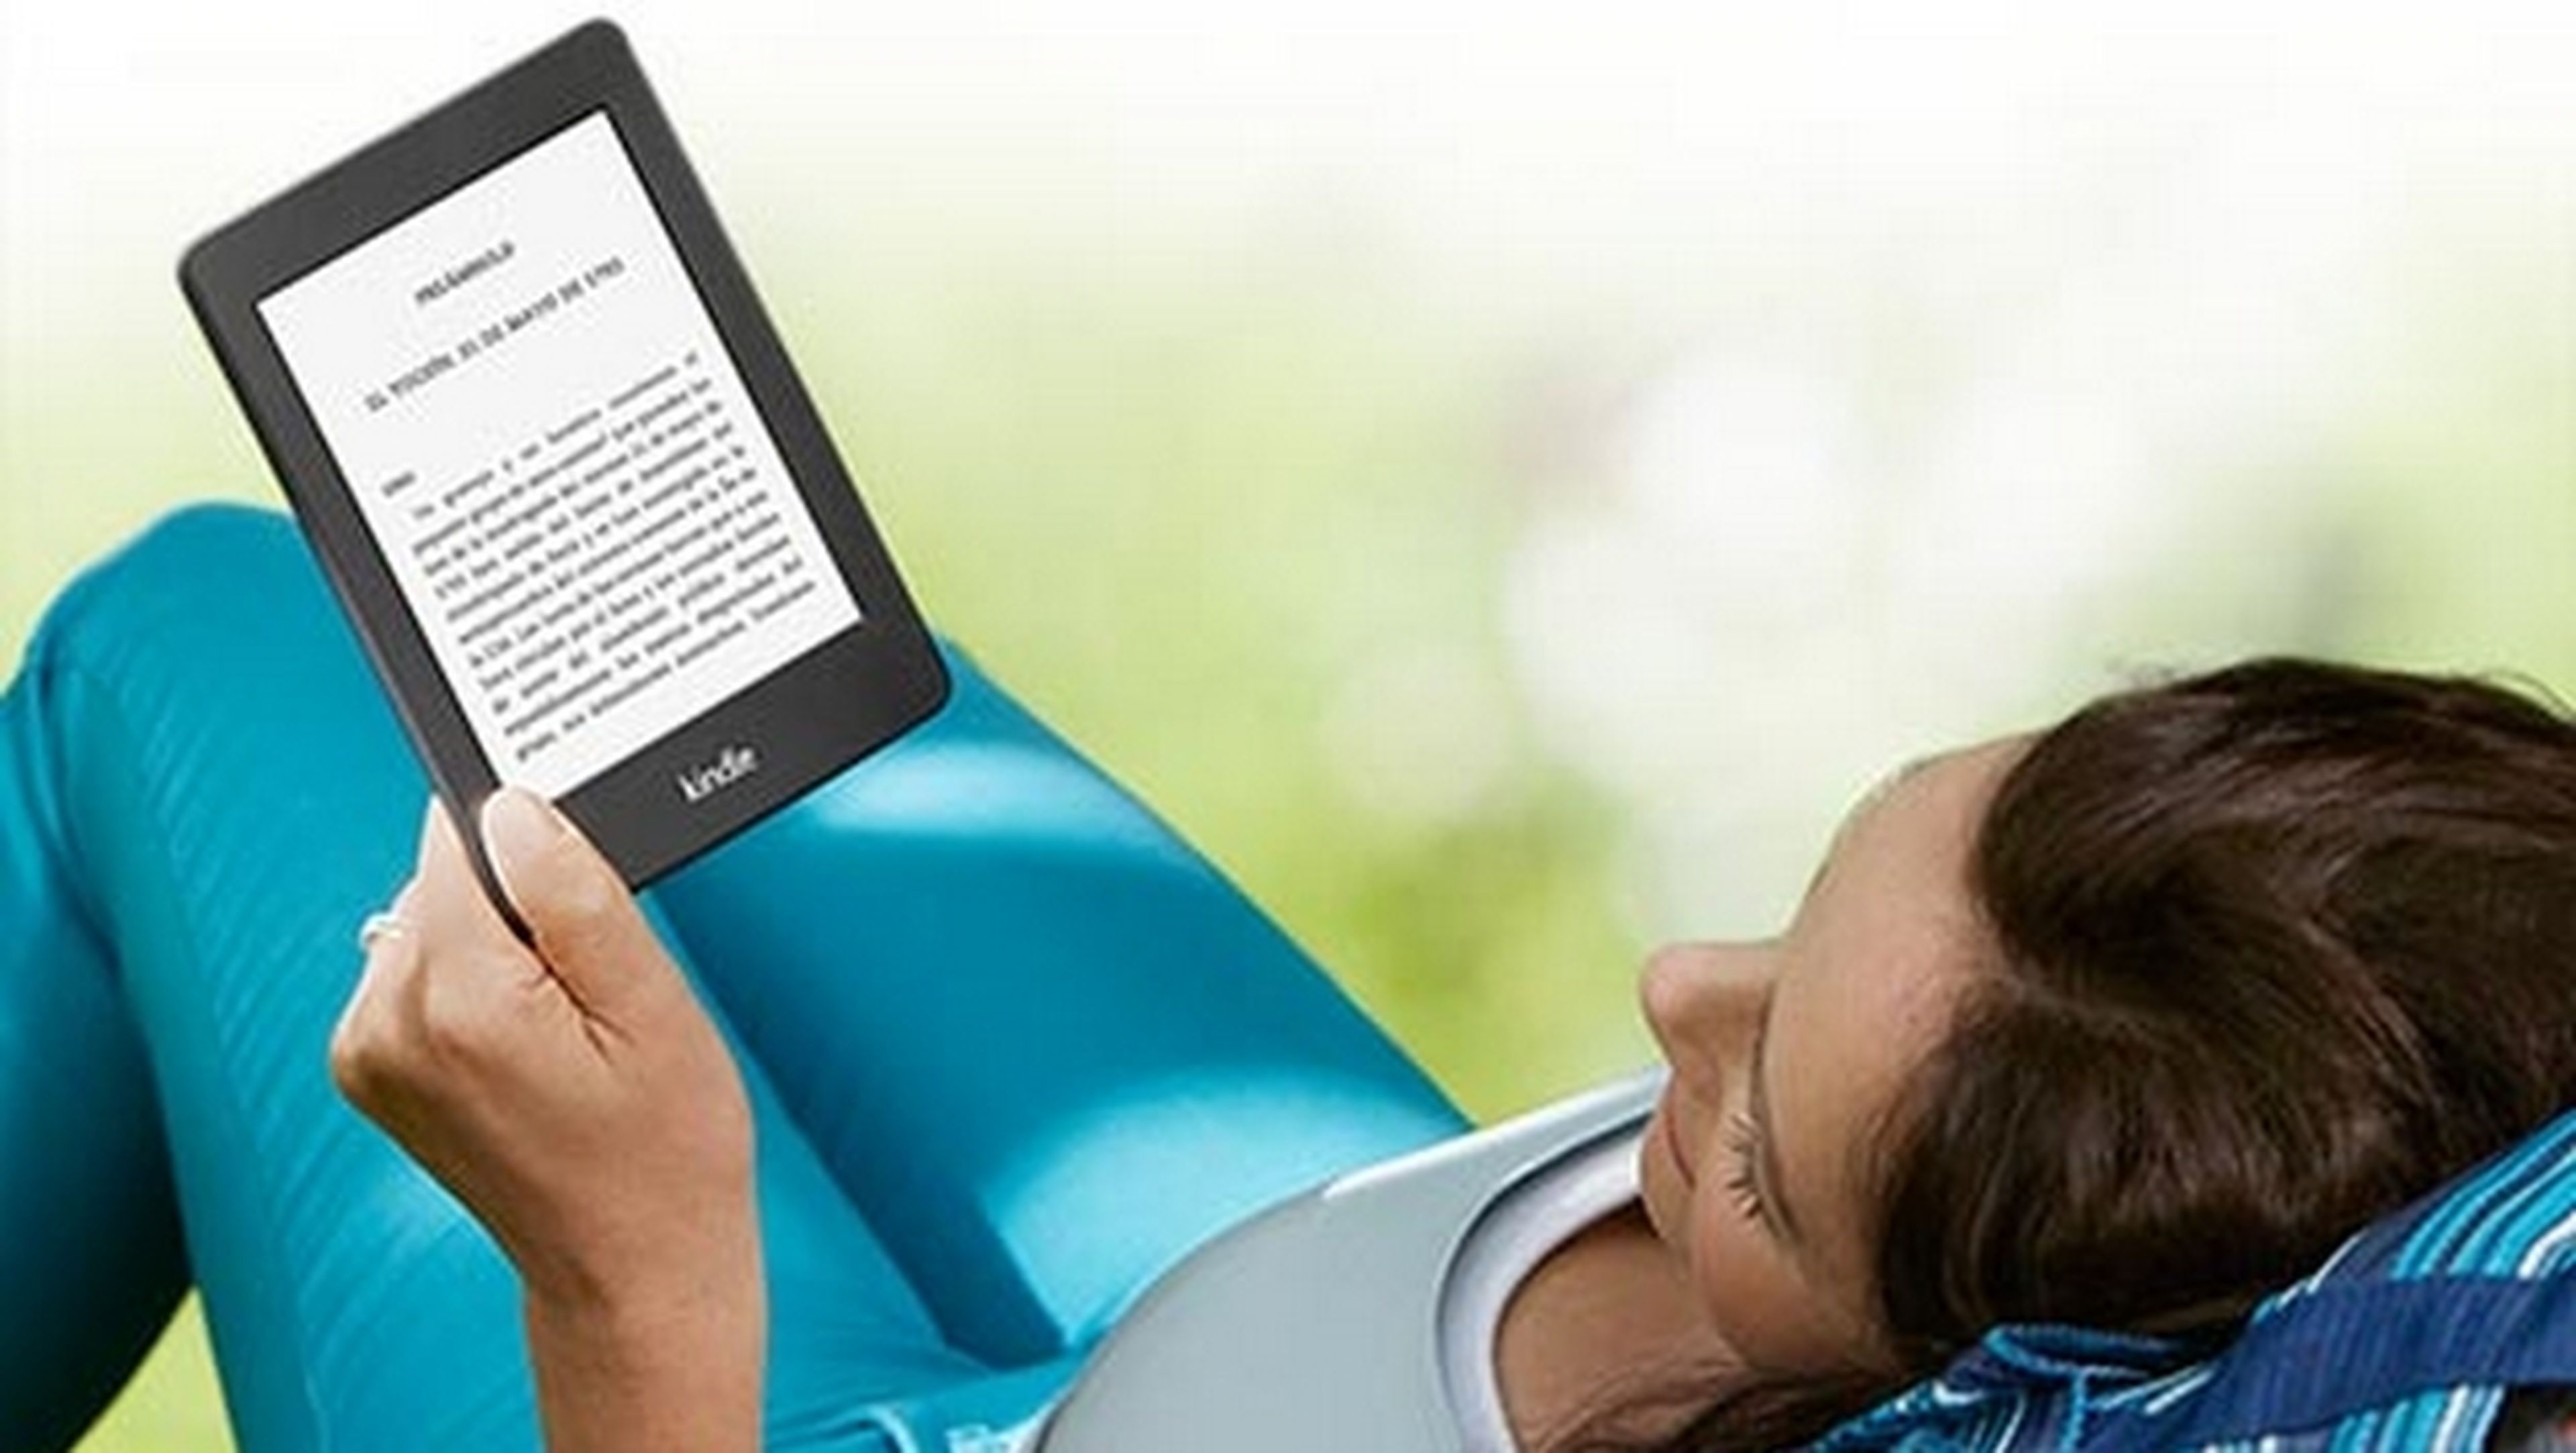 Importante update del Kindle Paperwhite 2012, de primera generación, recibe las mejoras del Kindle Paperwhite 2013